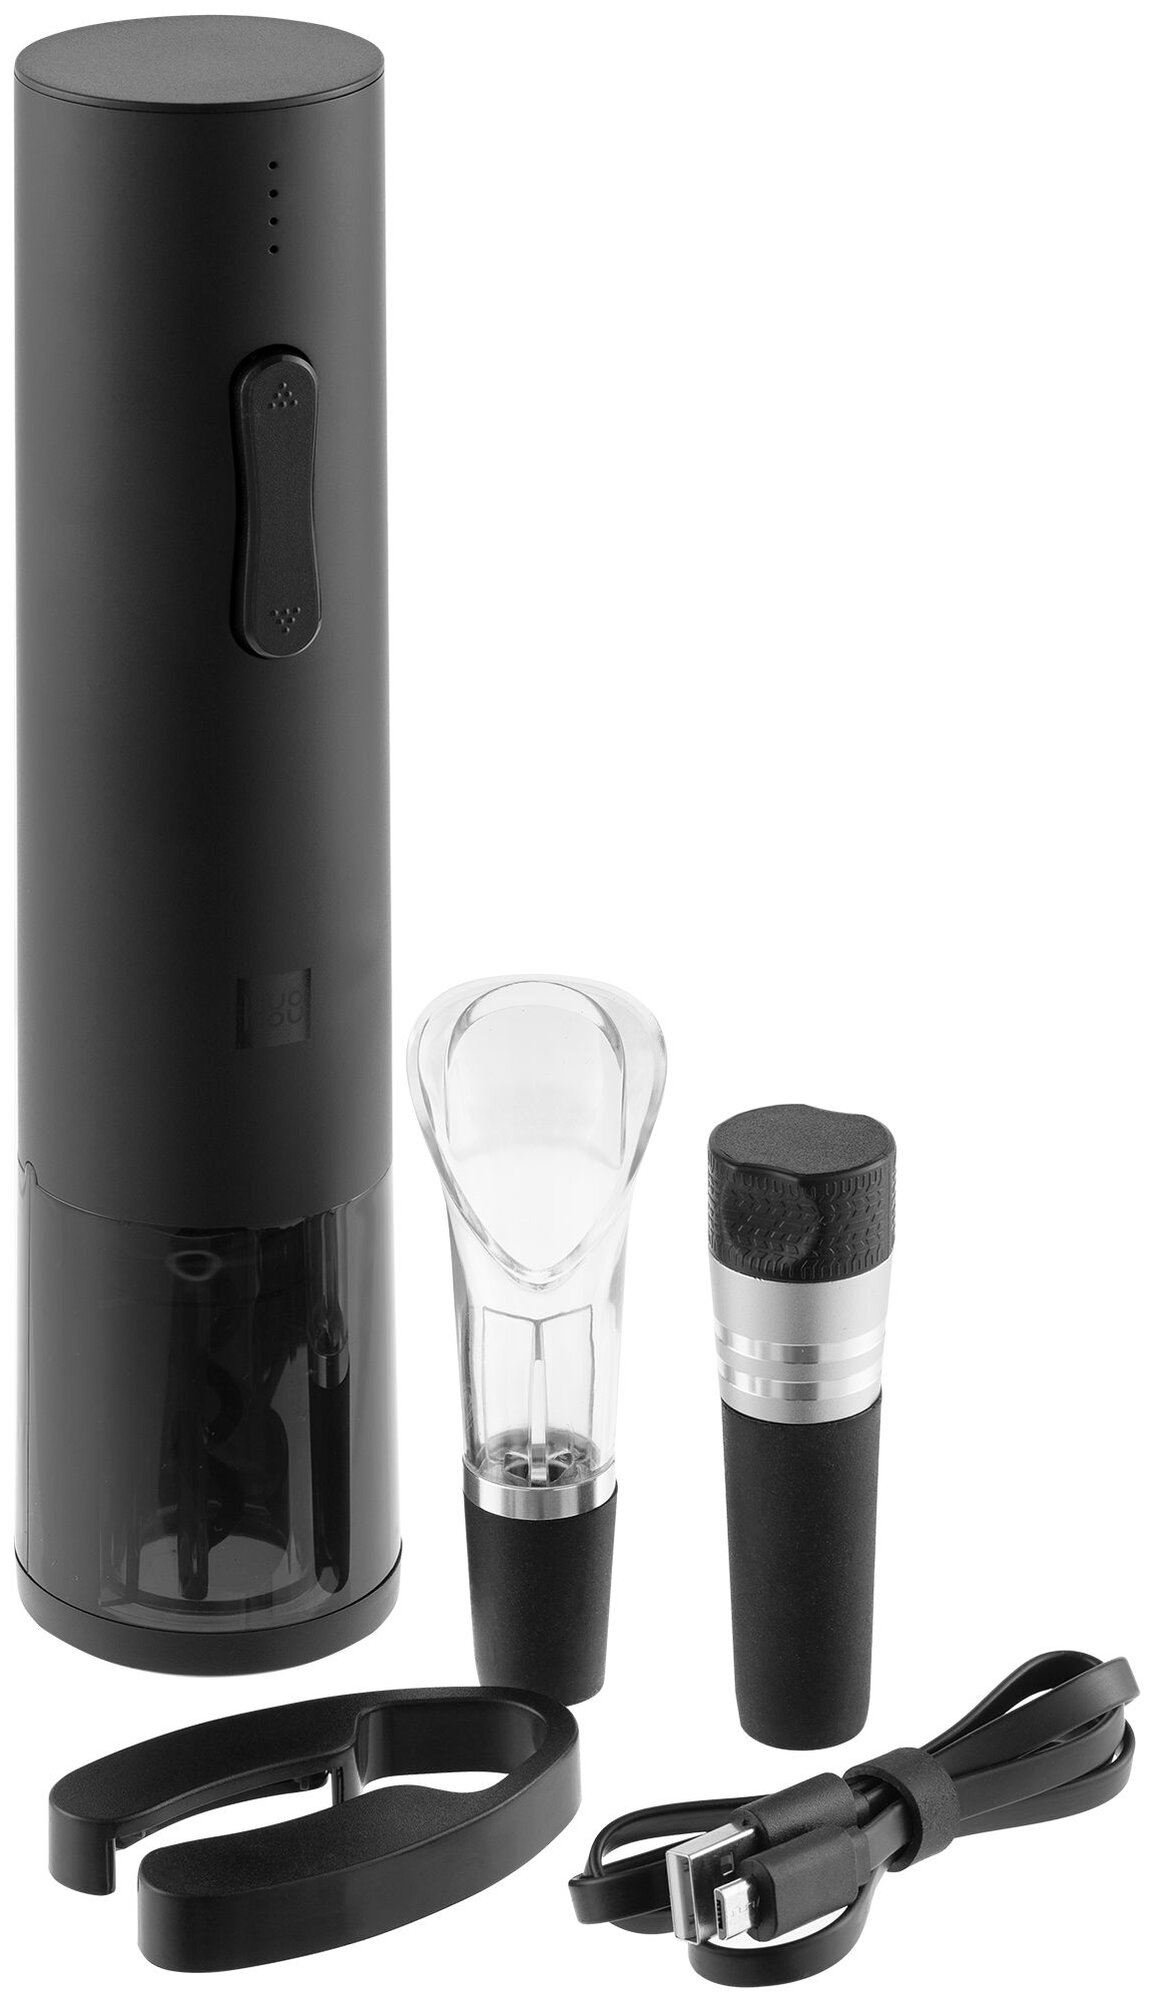 Набор аксессуаров HuoHou Electric Wine Bottle Opener Basic HU0047, 4 шт. Ростест (EAC), черный